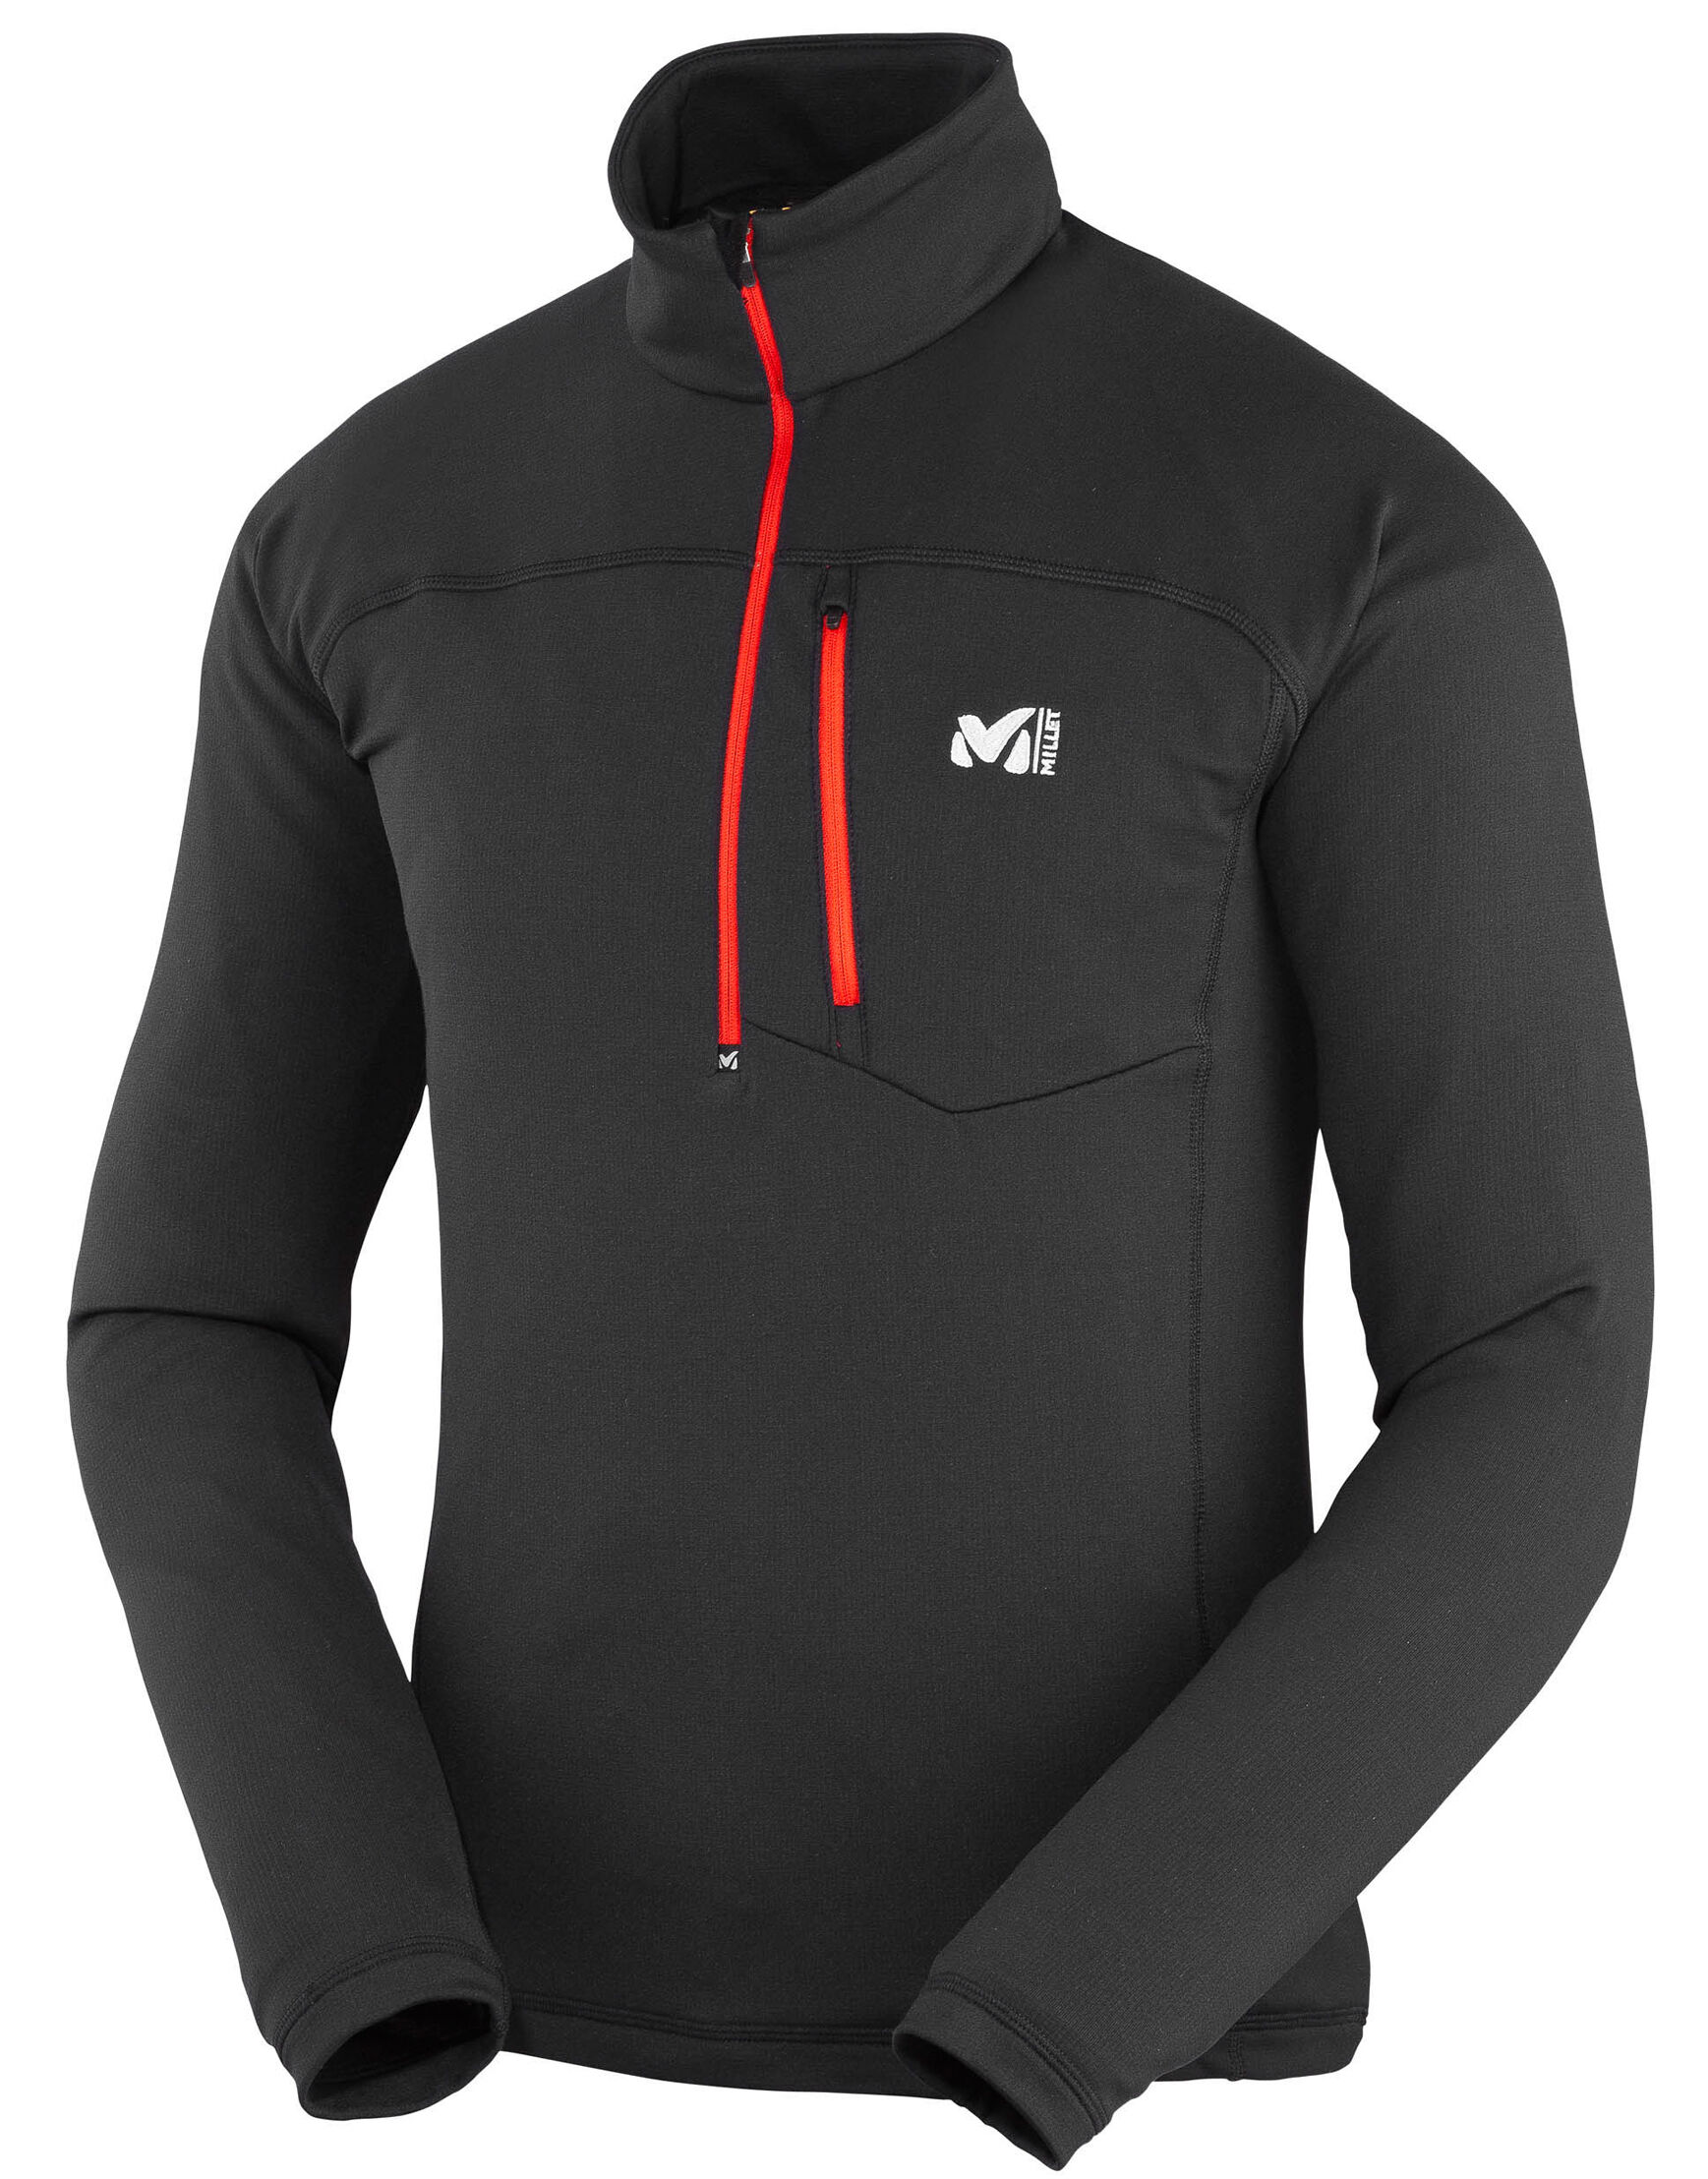 Millet - Technostretch Zip - Fleece jacket - Men's